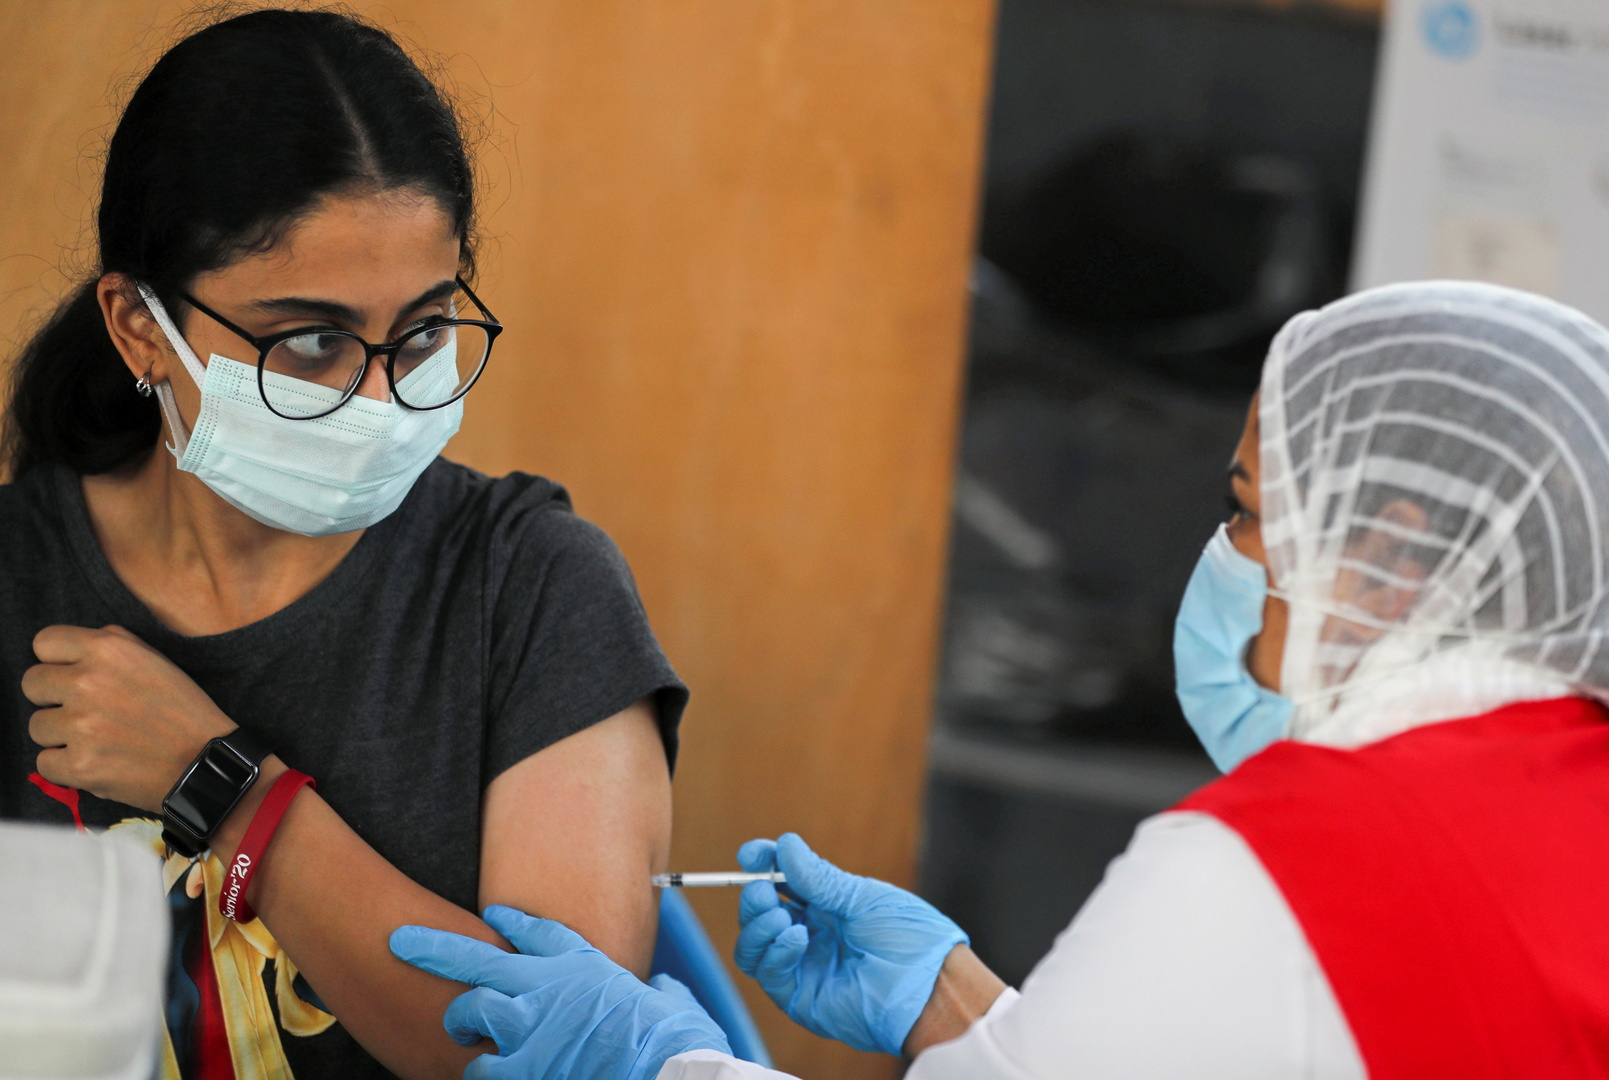 مصر تسجل 879 إصابة جديدة بفيروس كورونا و48 وفاة